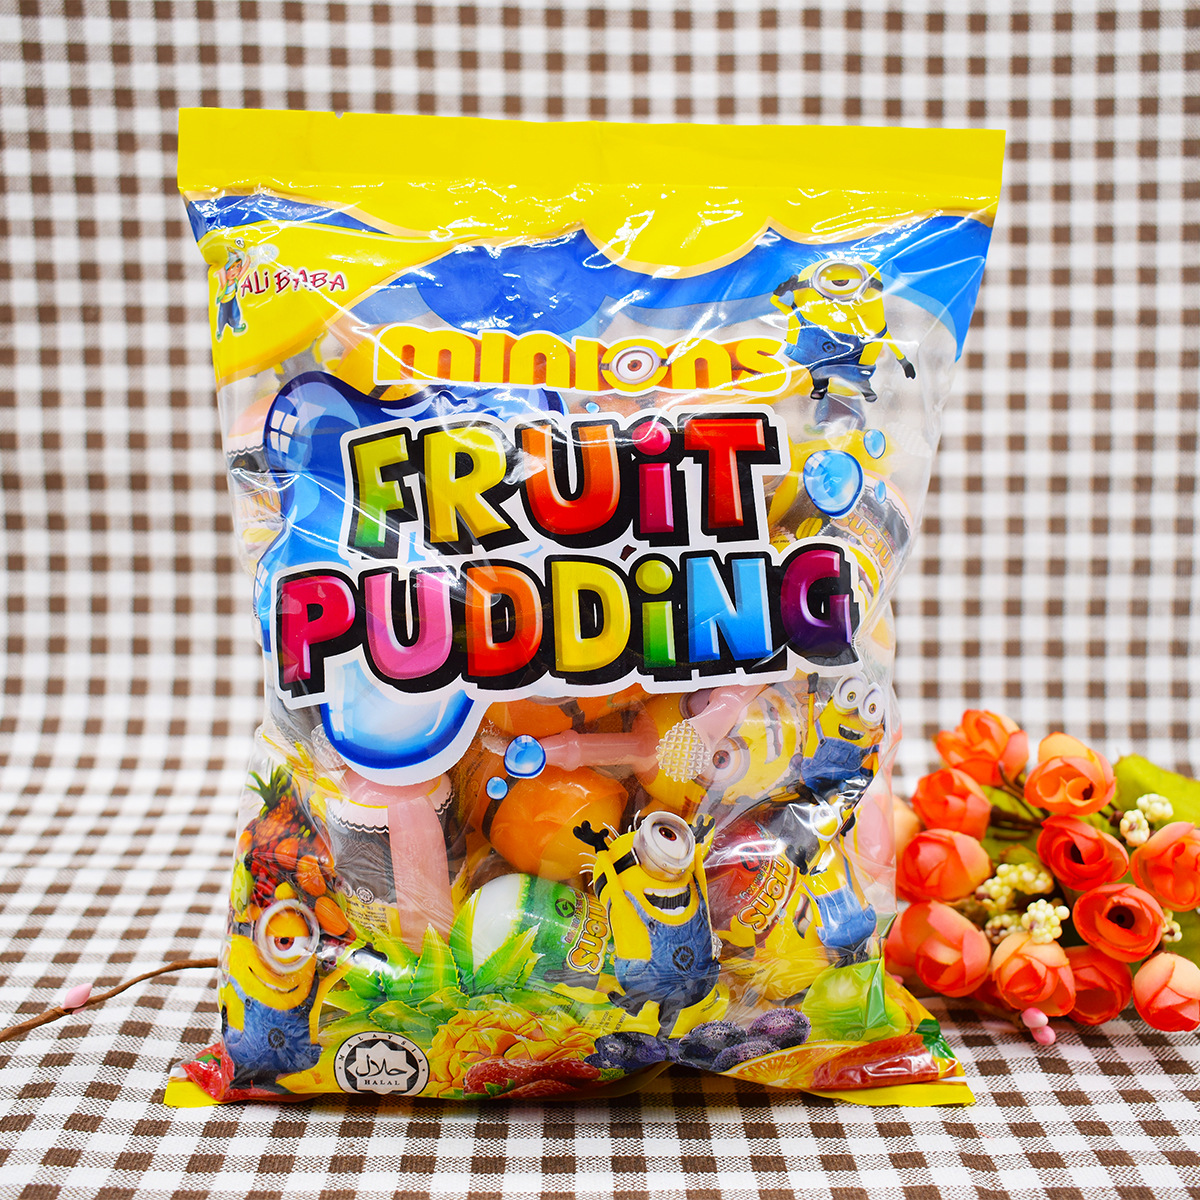 马来西亚进口小黄人ALIBABA综合水果味布丁果冻吸吸袋装休闲零食-封面